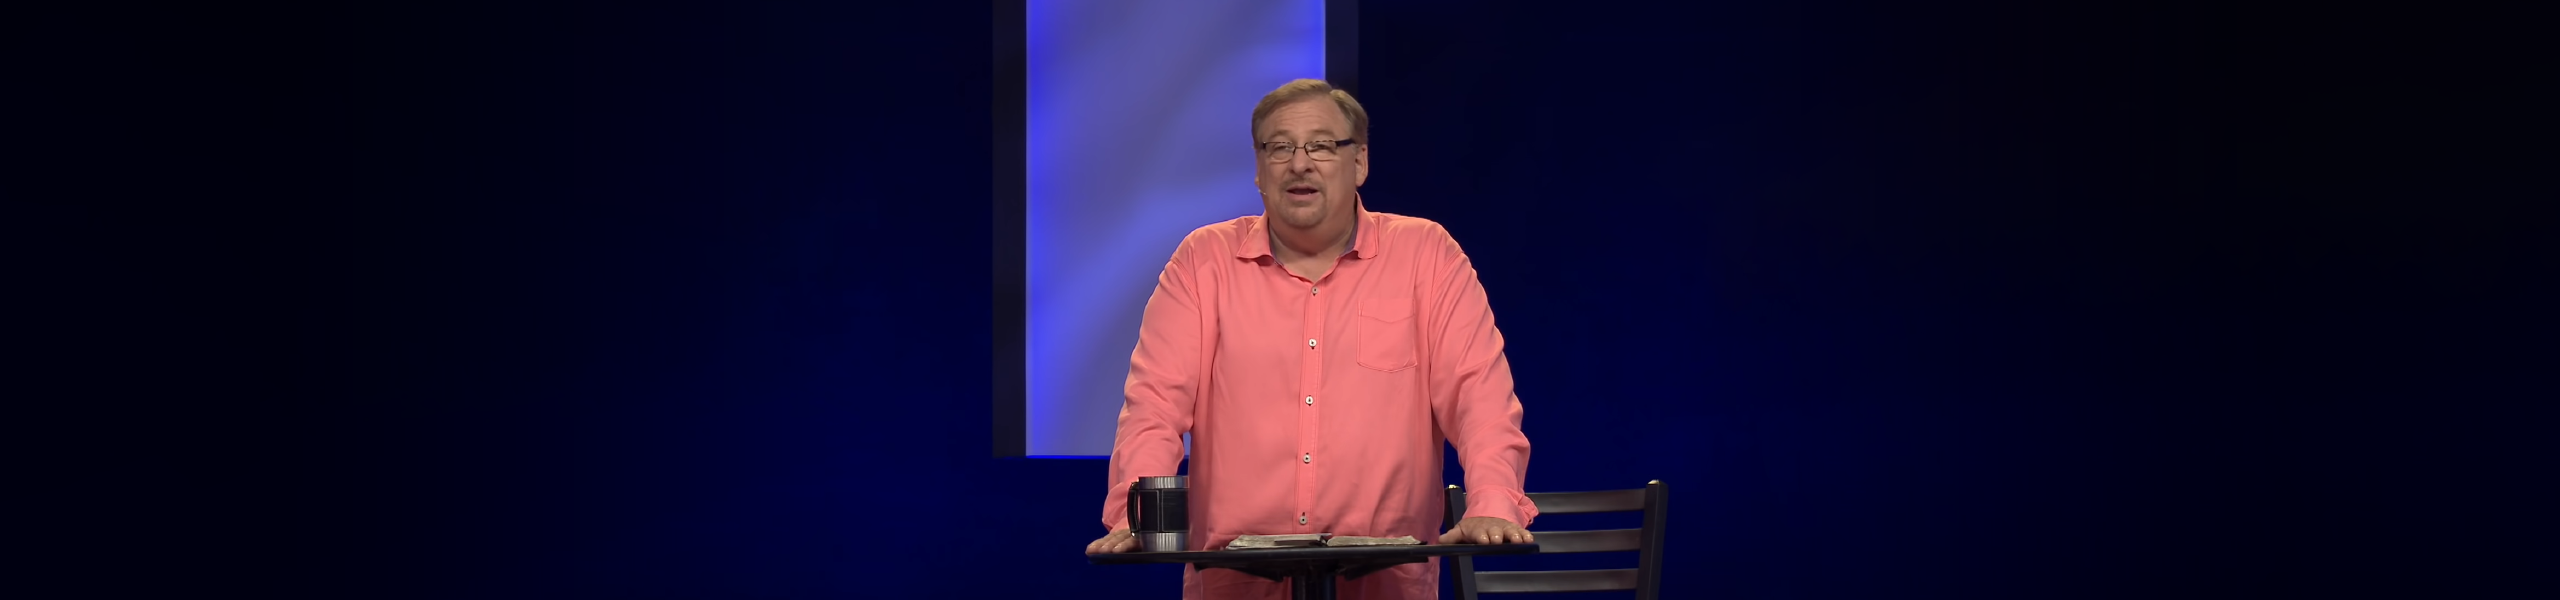 Living In The Goodness Of God | Saddleback Church